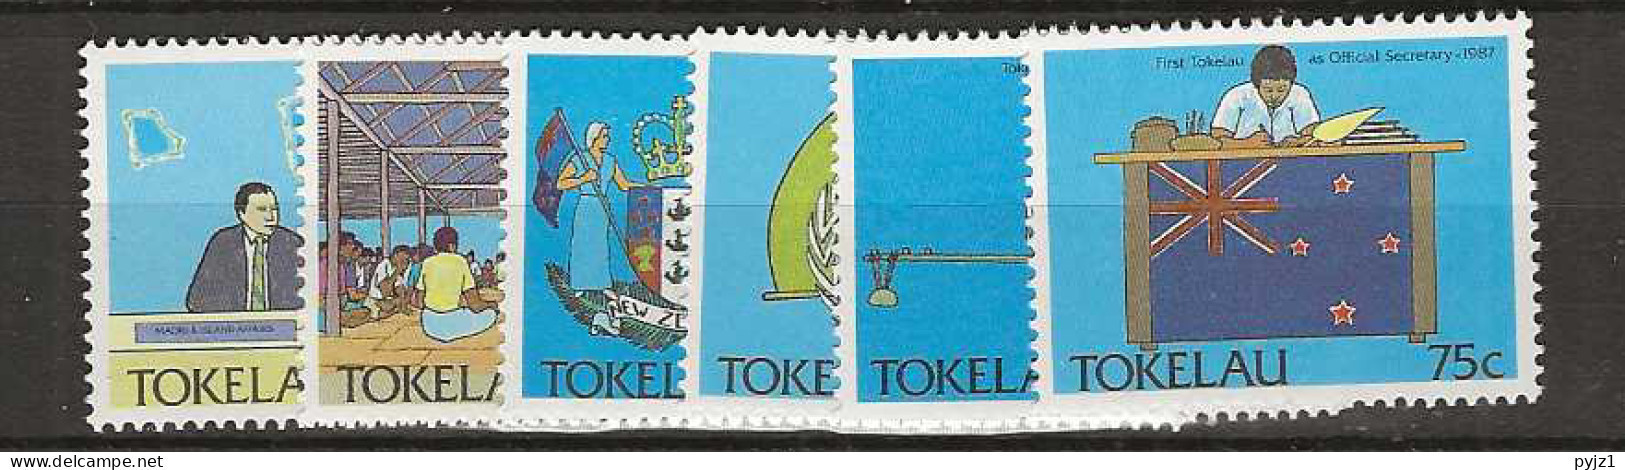 1988 MNH Tokelau Mi 153-58 Postfris** - Tokelau